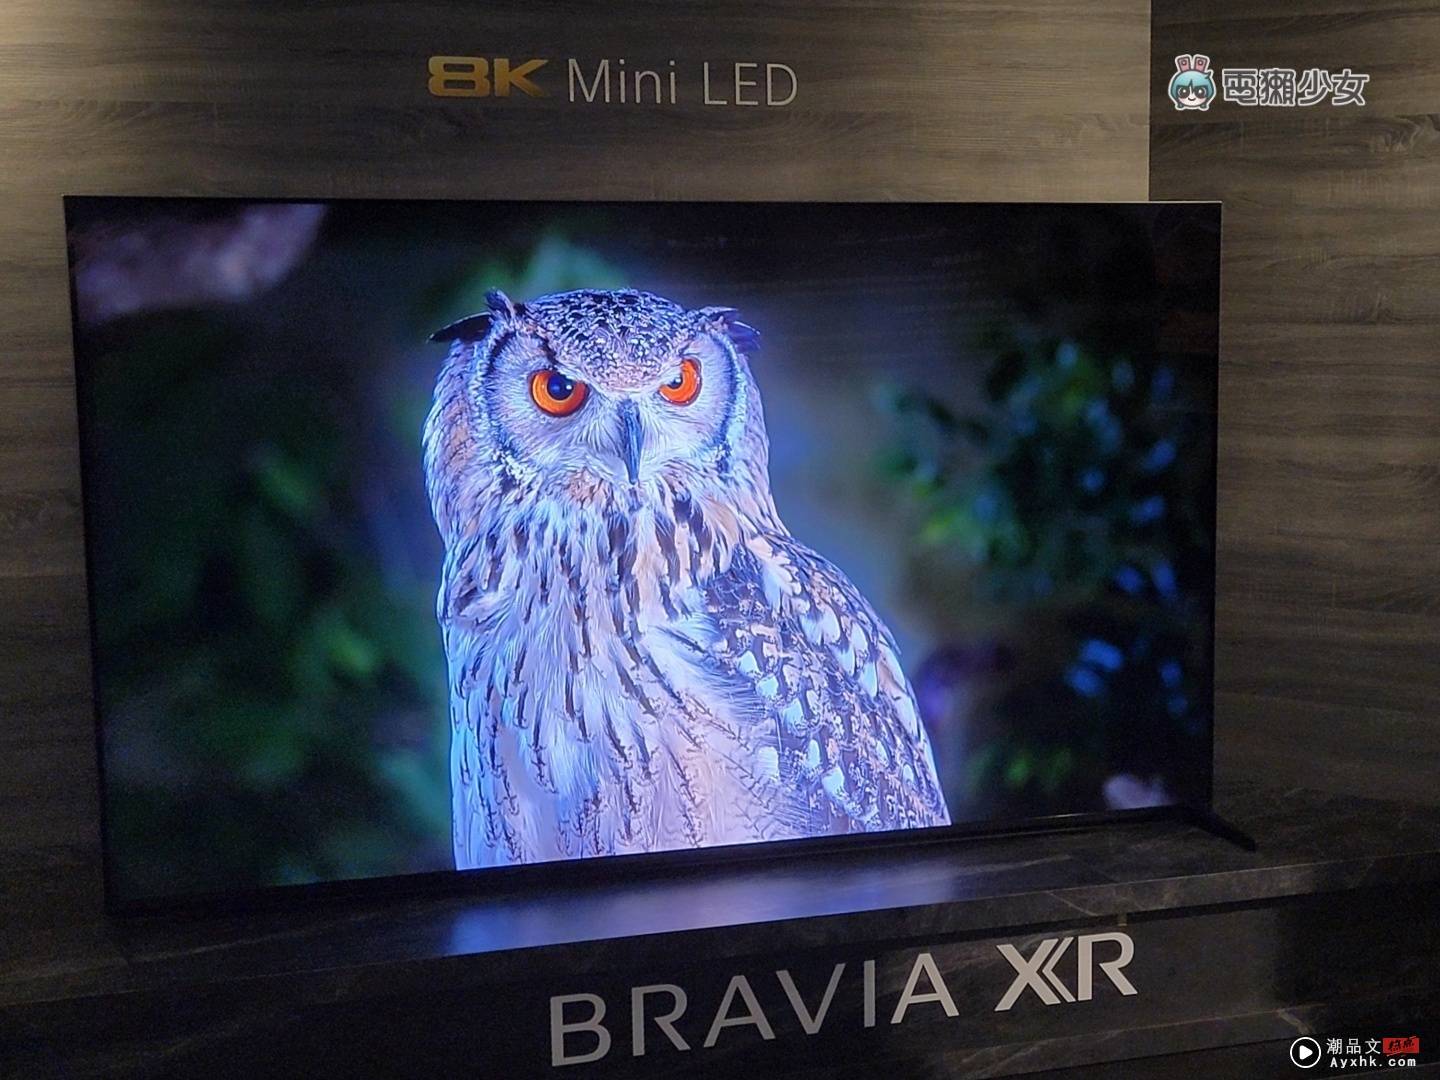 出门｜Sony BRAAIA XR 电视全系列皆为 PS5 推荐机种，体验 OLED、Mini LED 的旗舰级显色 数码科技 图13张